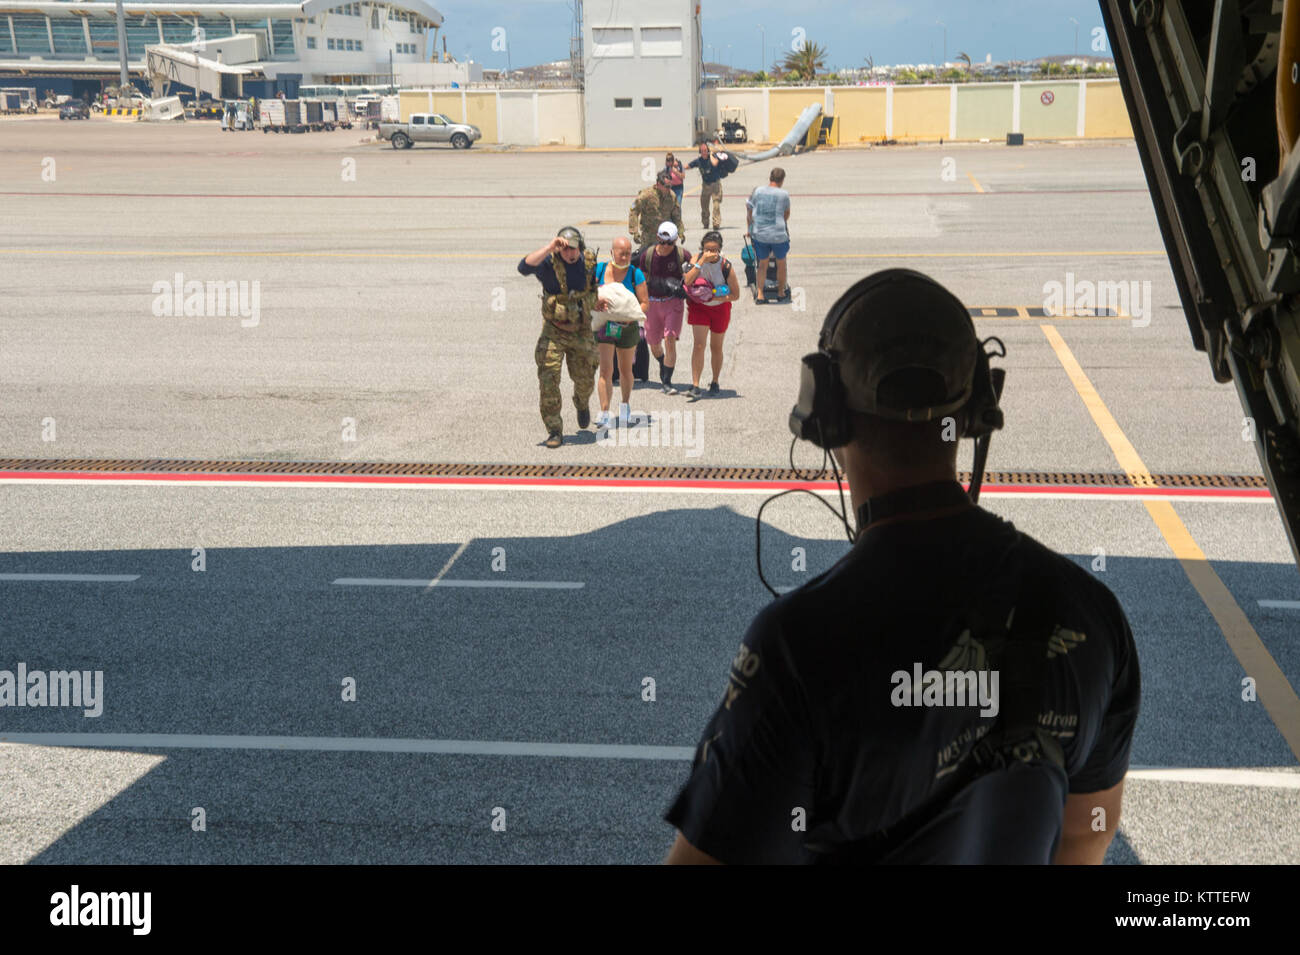 Membri dalla 106ª Ala di salvataggio aiutare gli sfollati dalla distrutta aeroporto su St Maarten su un HC-130 mettetevi comodi e di sentirsi al sicuro come si preparano per portarli a San Juan, Puerto Rico. Il New York Air National Guard la 106ª Ala di salvataggio, staging fuori di San Juan, Puerto Rico con la 156aria parafango sollevamento forniscono il supporto per il salvataggio di coloro che sono nel bisogno su St Maarten. La 106ª portato due HC-130 re aeromobili, tre HH-60 Pave Hawk elicotteri, tre zodiac barche e 124 aviatori necessaria per svolgere la missione. Foto Stock